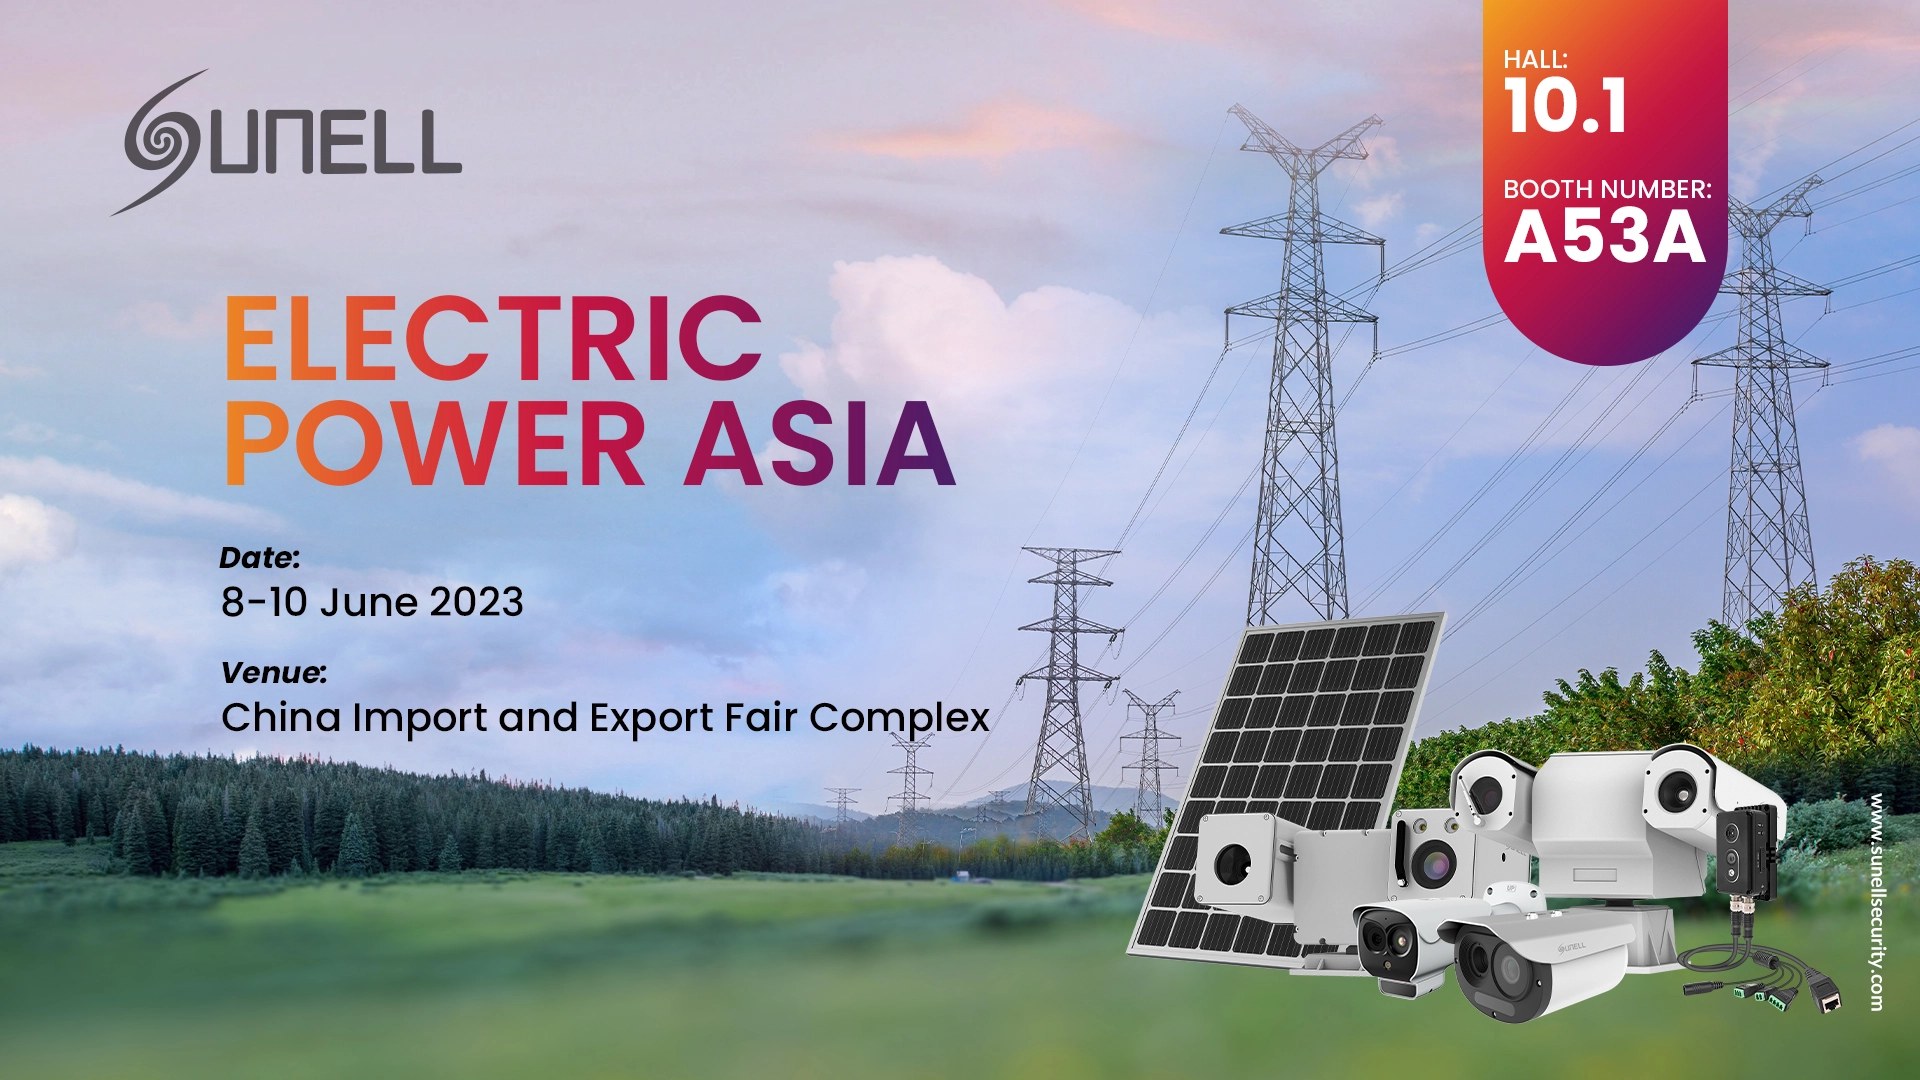 ستعرض سونيل الحلول الذكية للتصوير الحراري في الطاقة الكهربائية الآسيوية